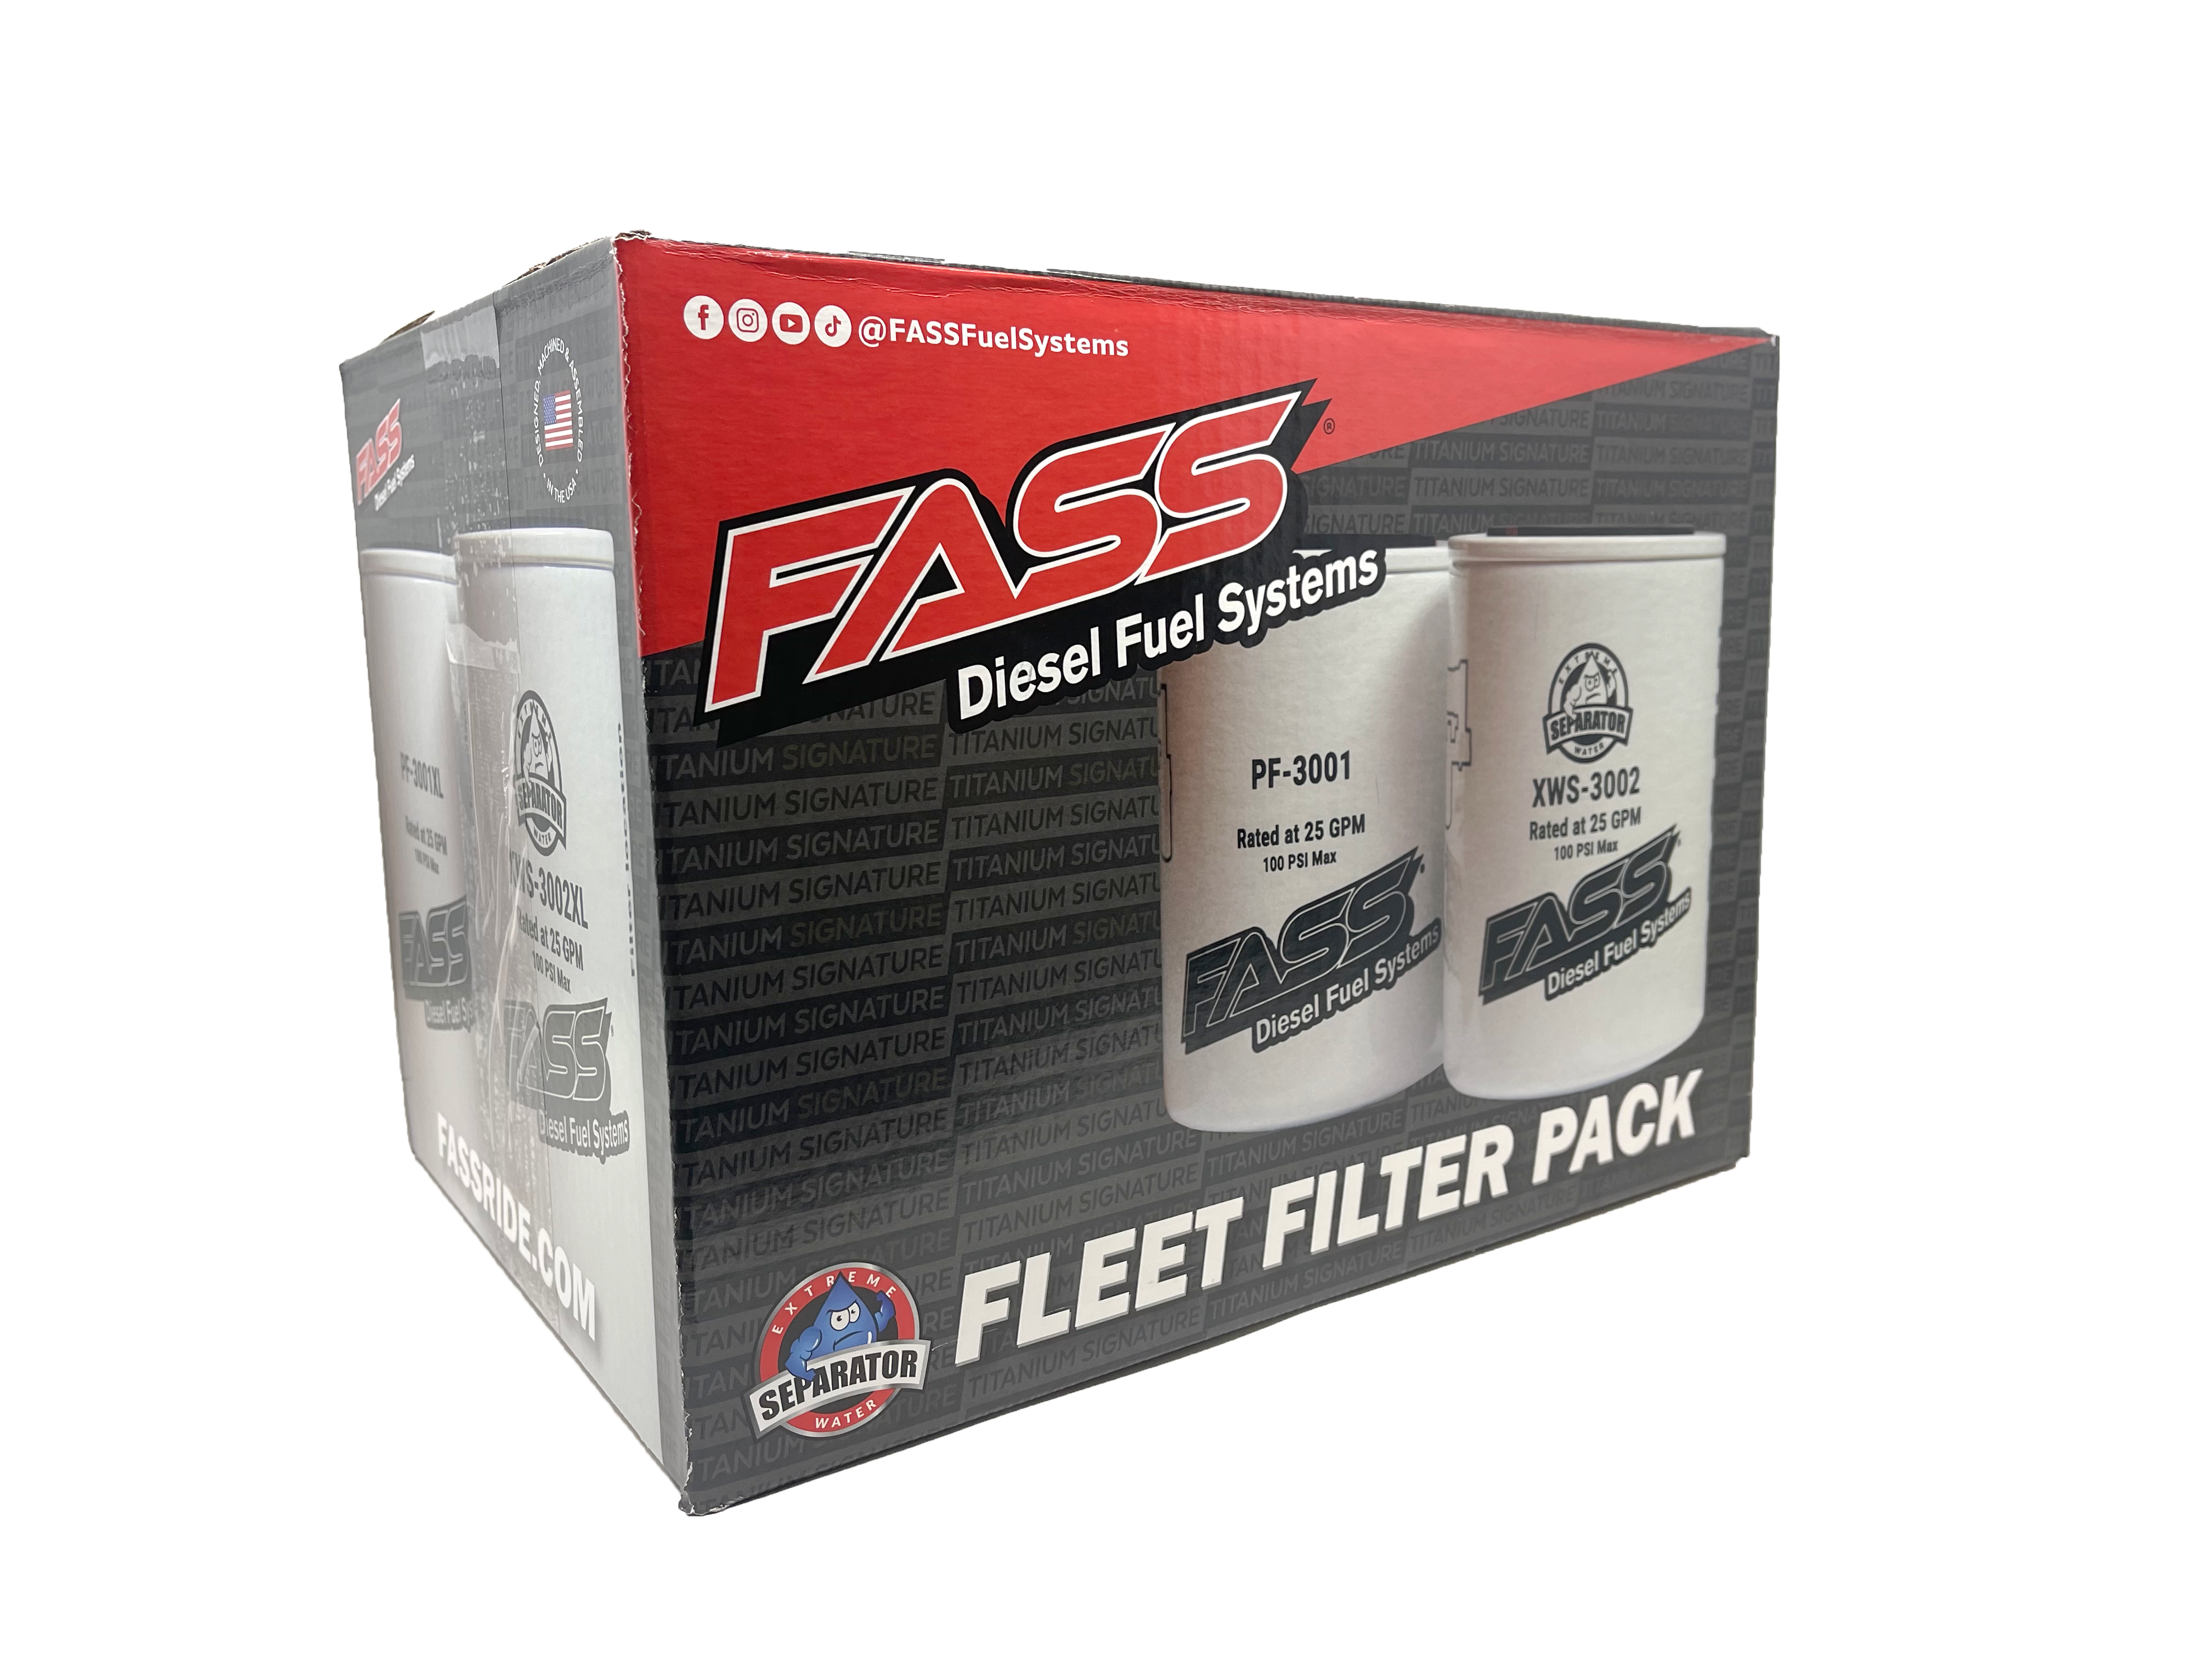 superficial Min Tender FASS Fuel Systems Fleet Filter Pack (FLP3000) - FASS Diesel Fuel Systems